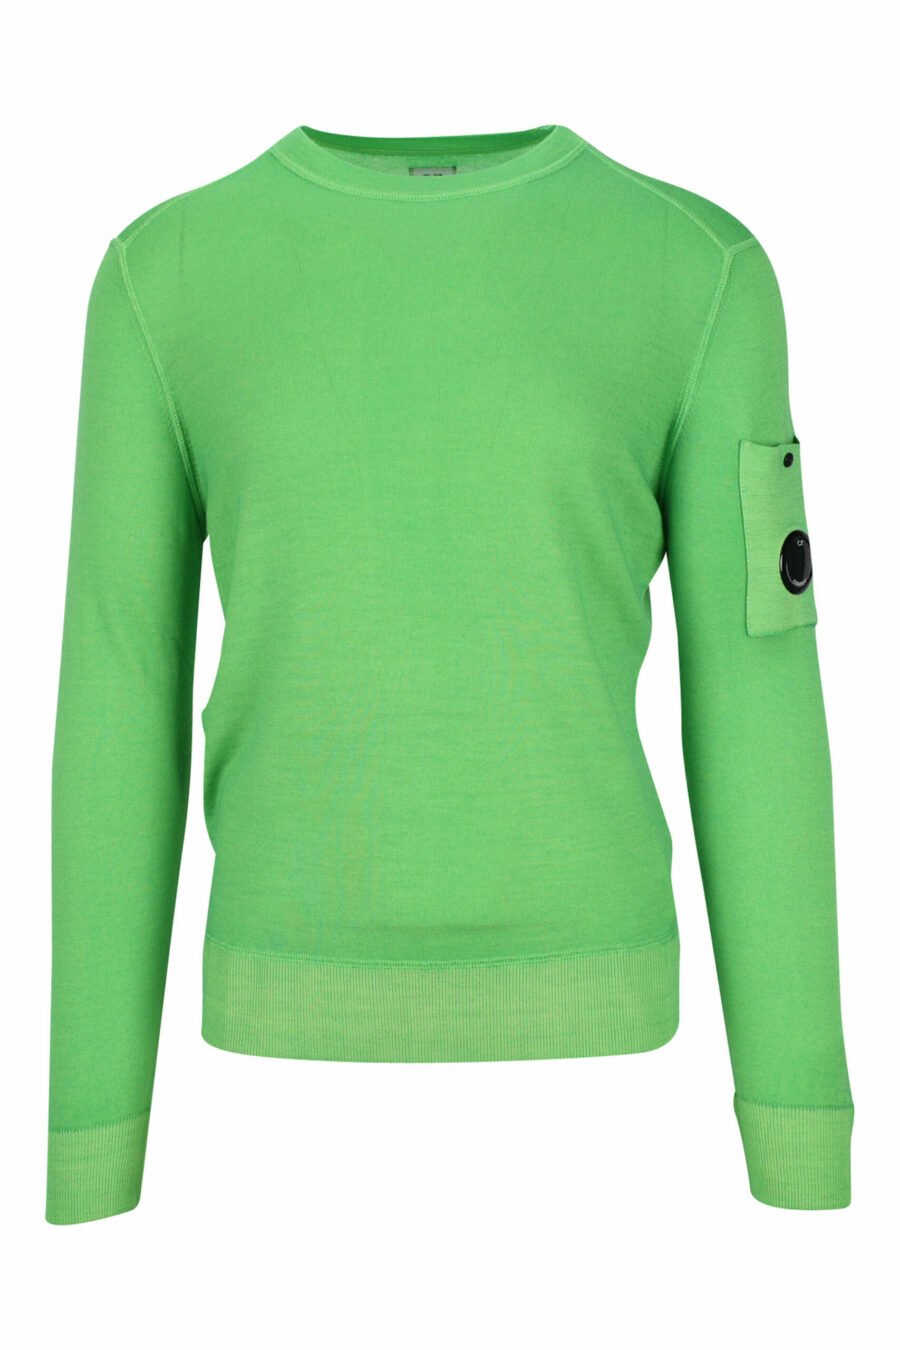 Grünes Sweatshirt mit seitlichem Linsenlogo - 7620943580846 skaliert